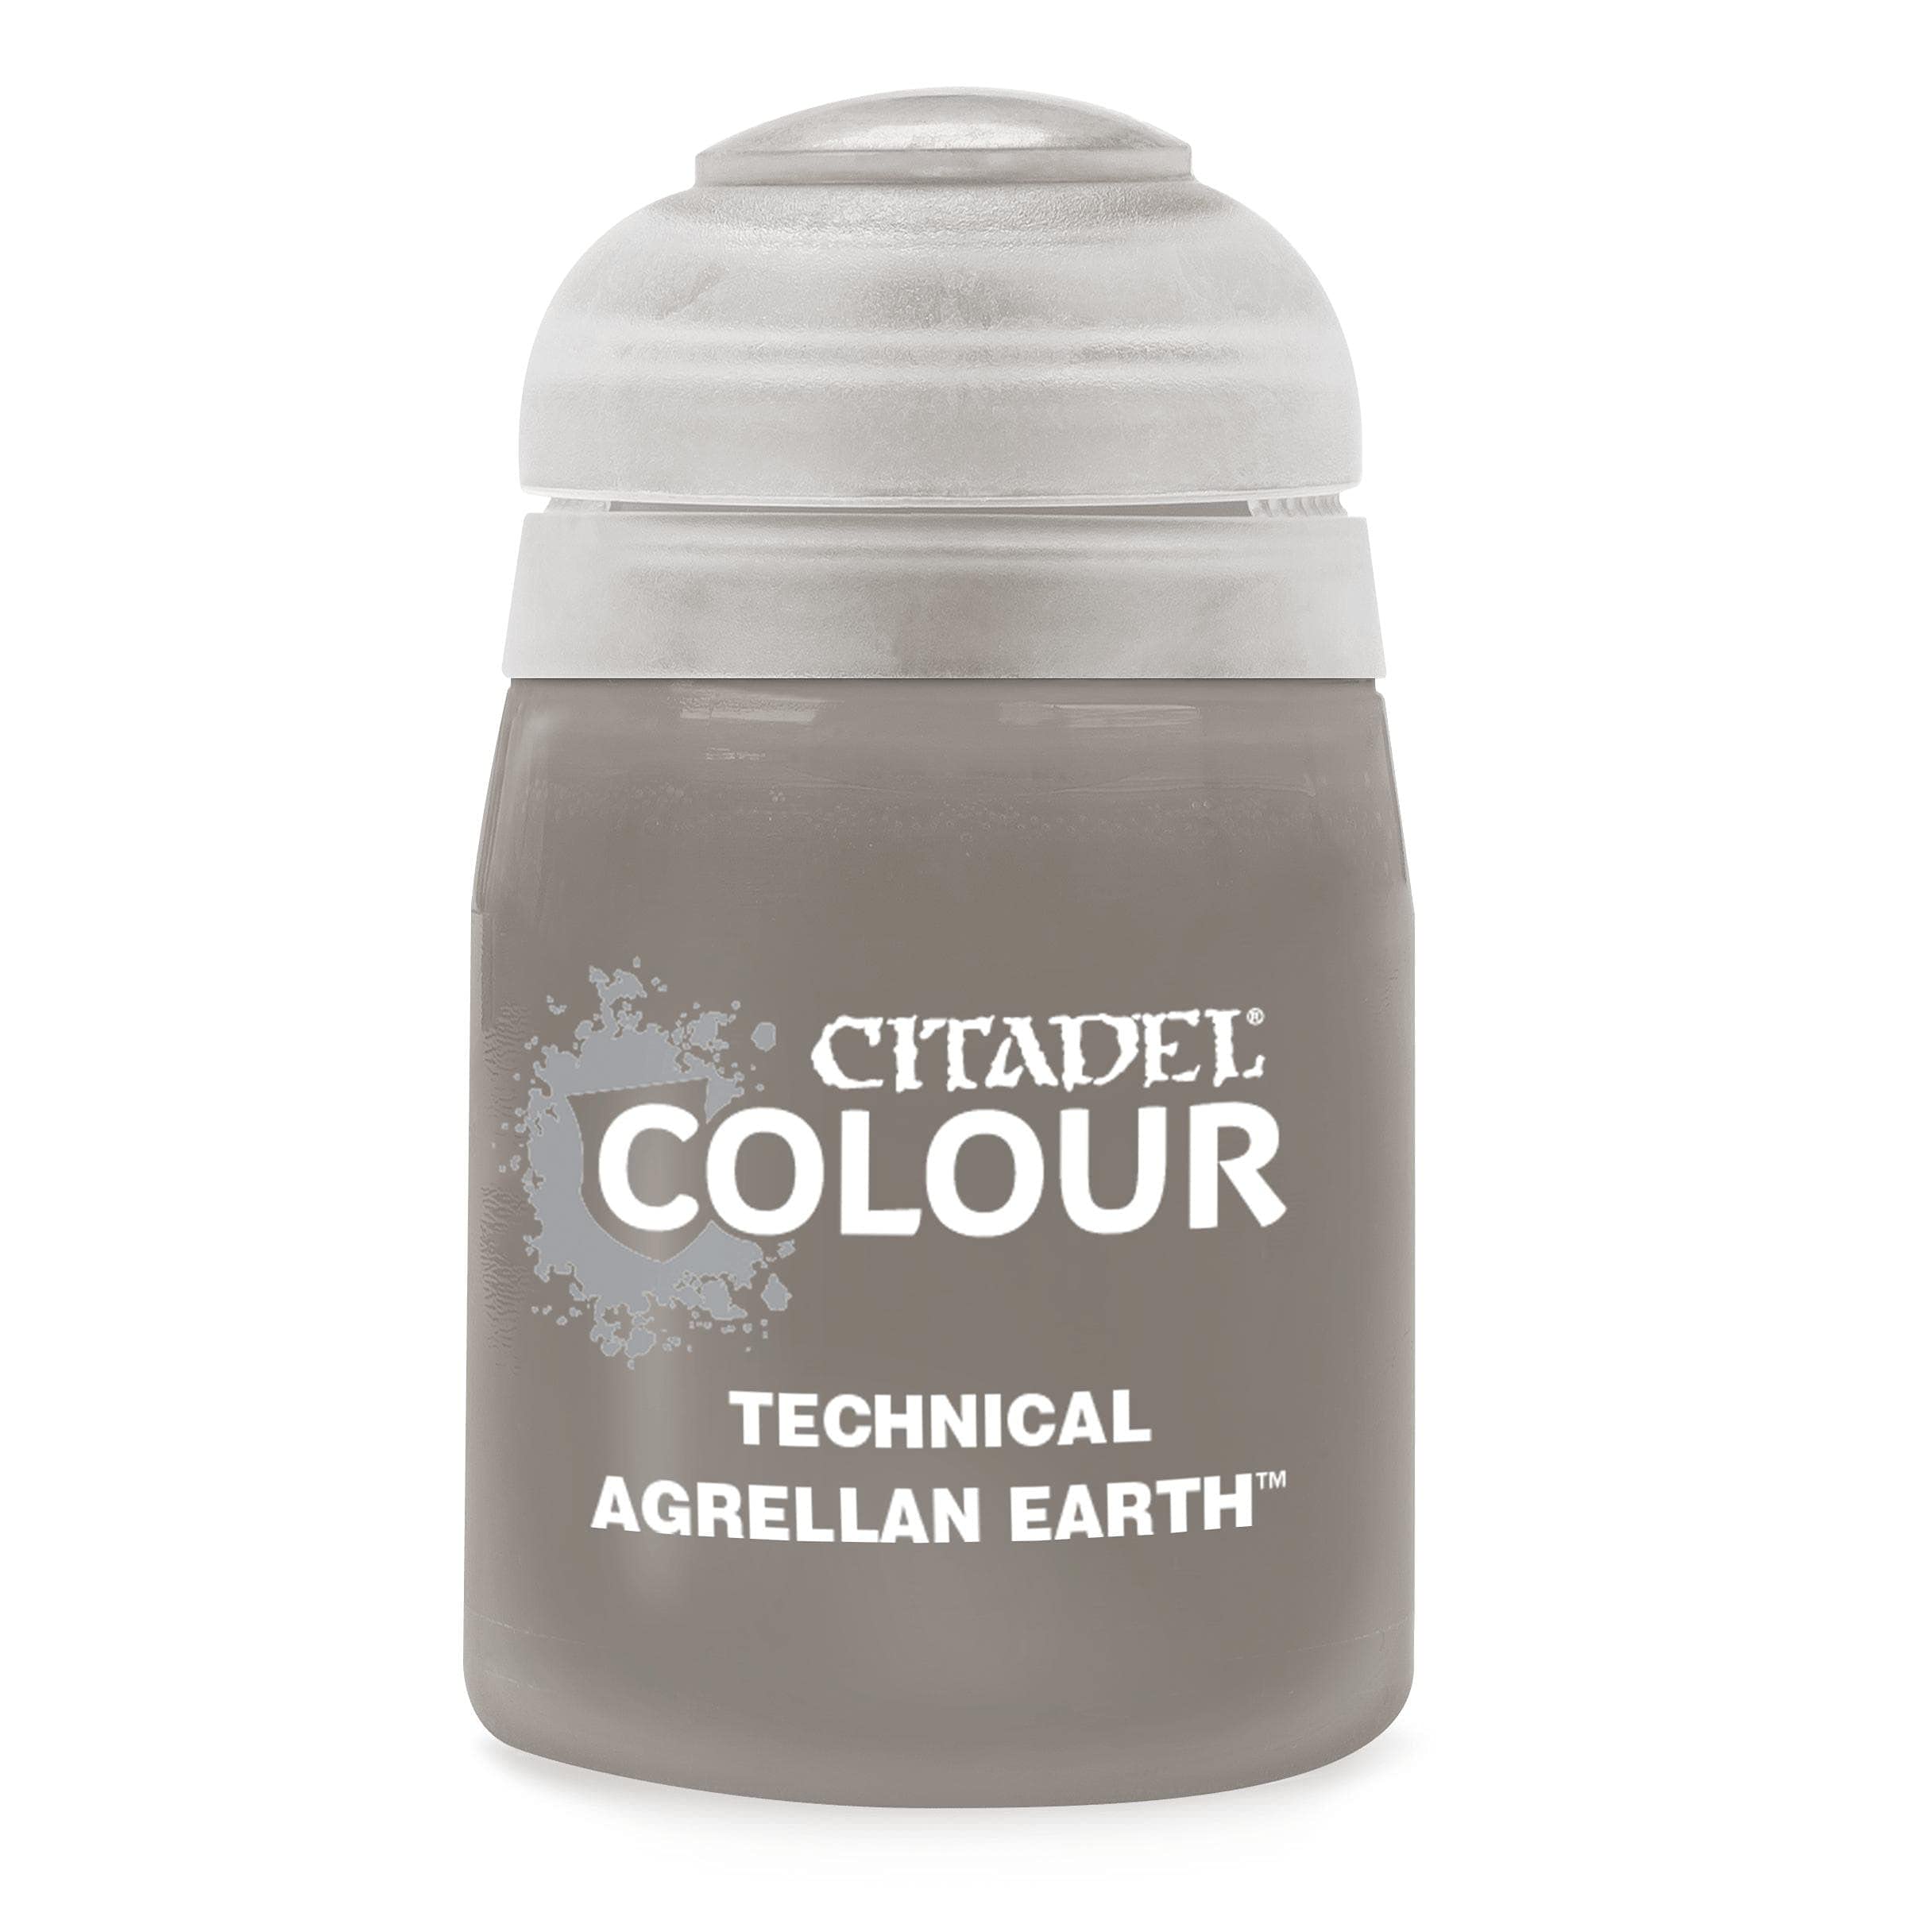 Citadel Colour – Technical – Agrellan Earth